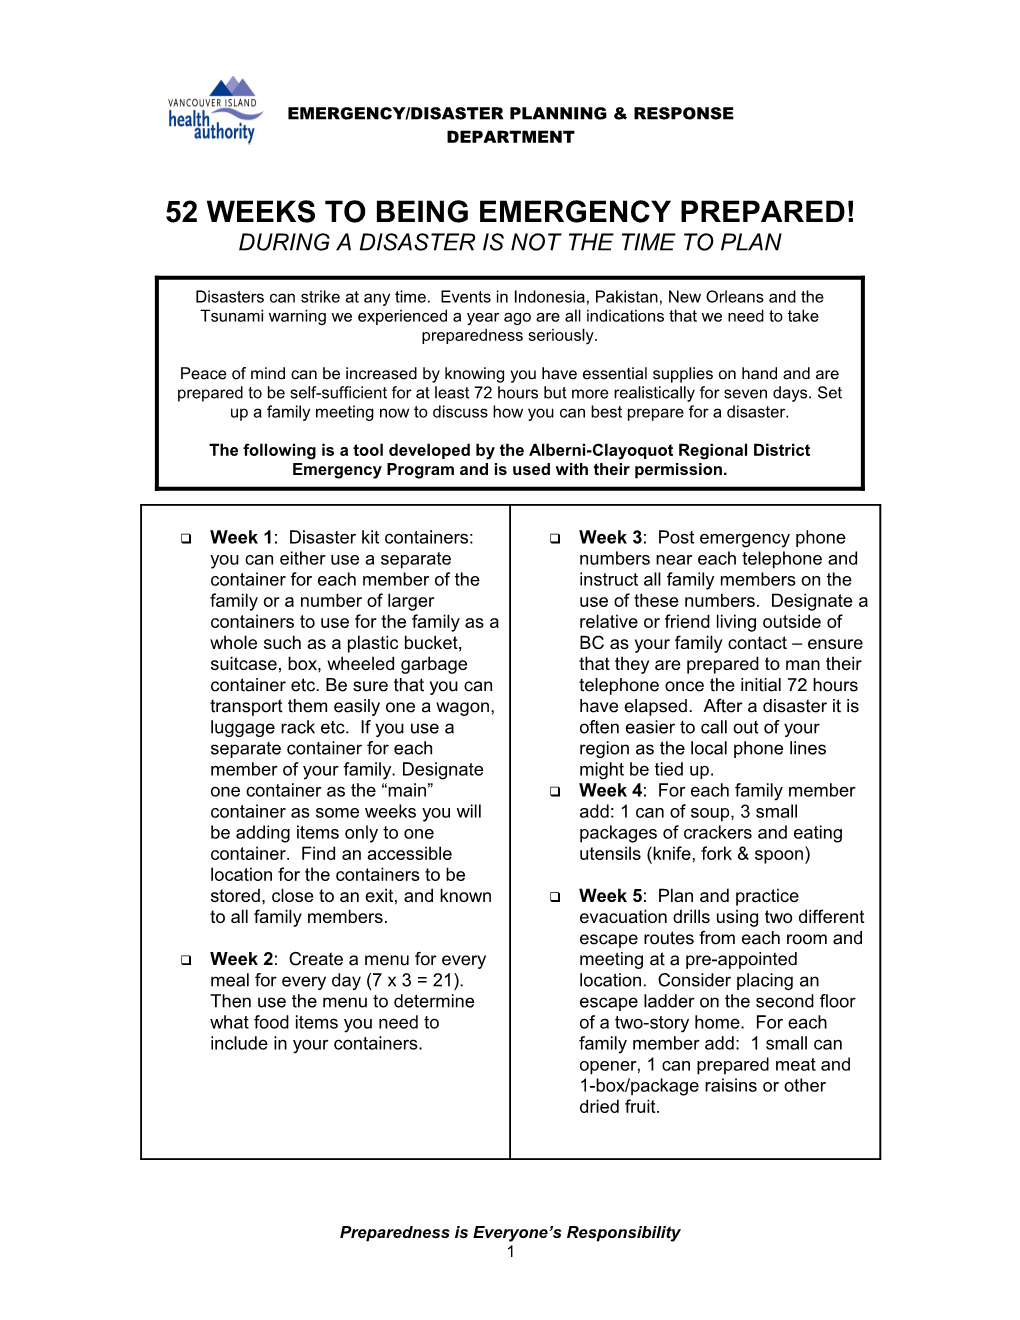 52 Weeks to Being Emergency Prepared!